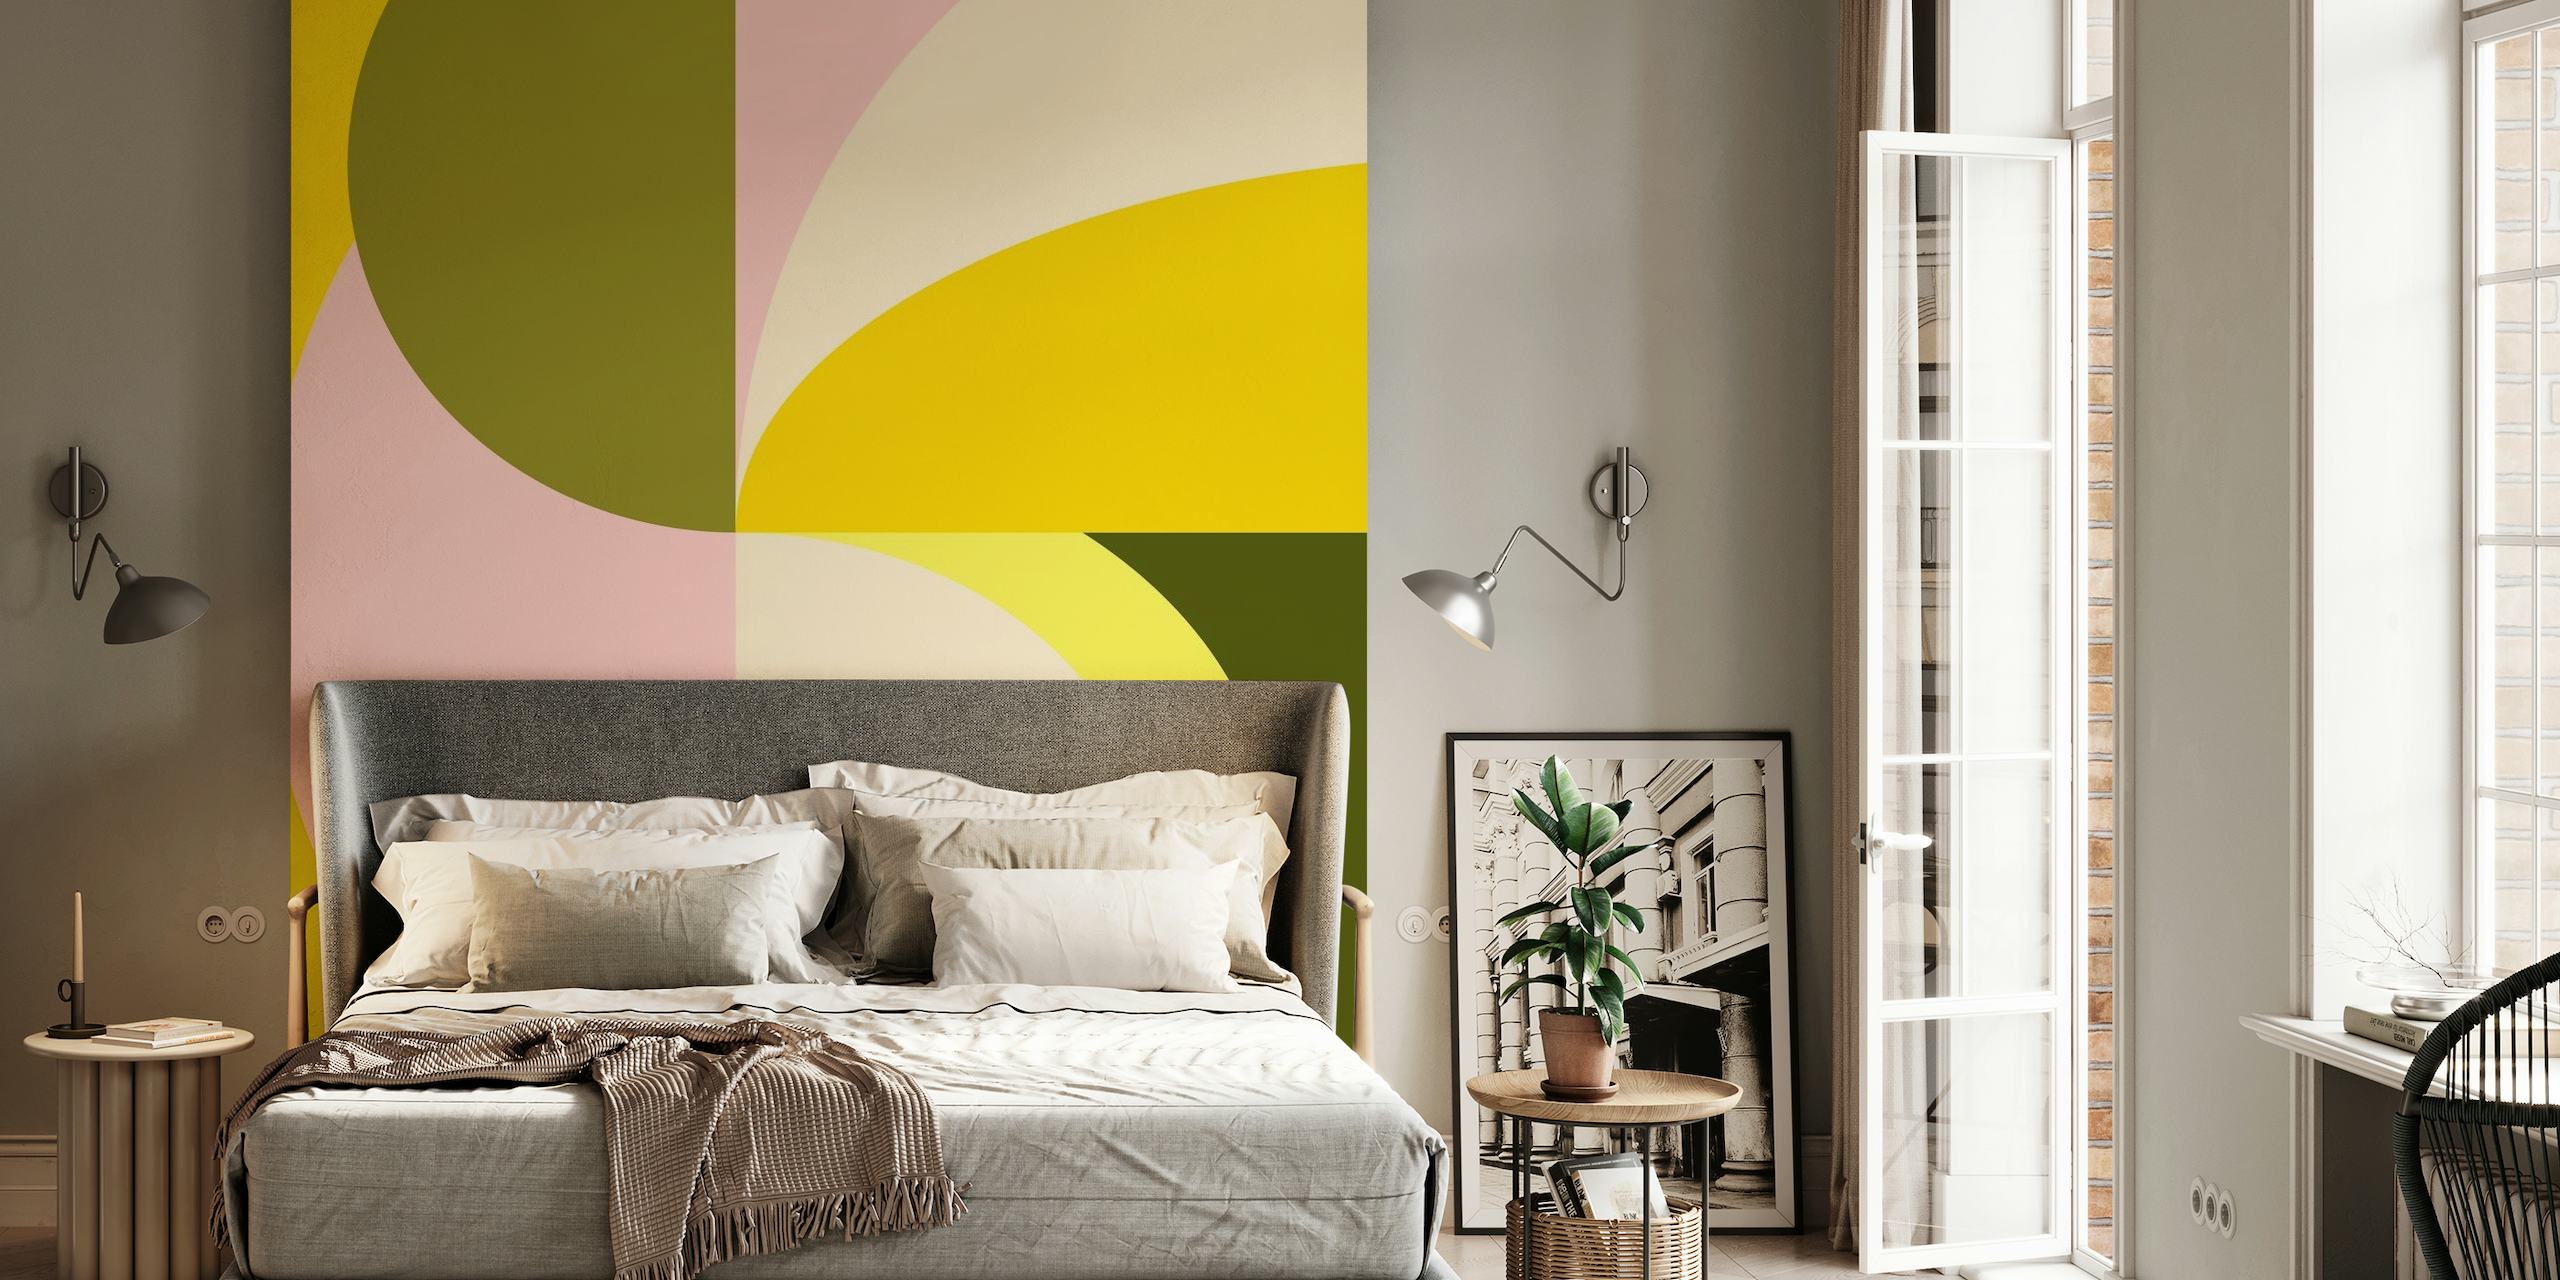 Mural de parede de formas geométricas abstratas com cores cítricas, incluindo tons de amarelo, rosa e verde